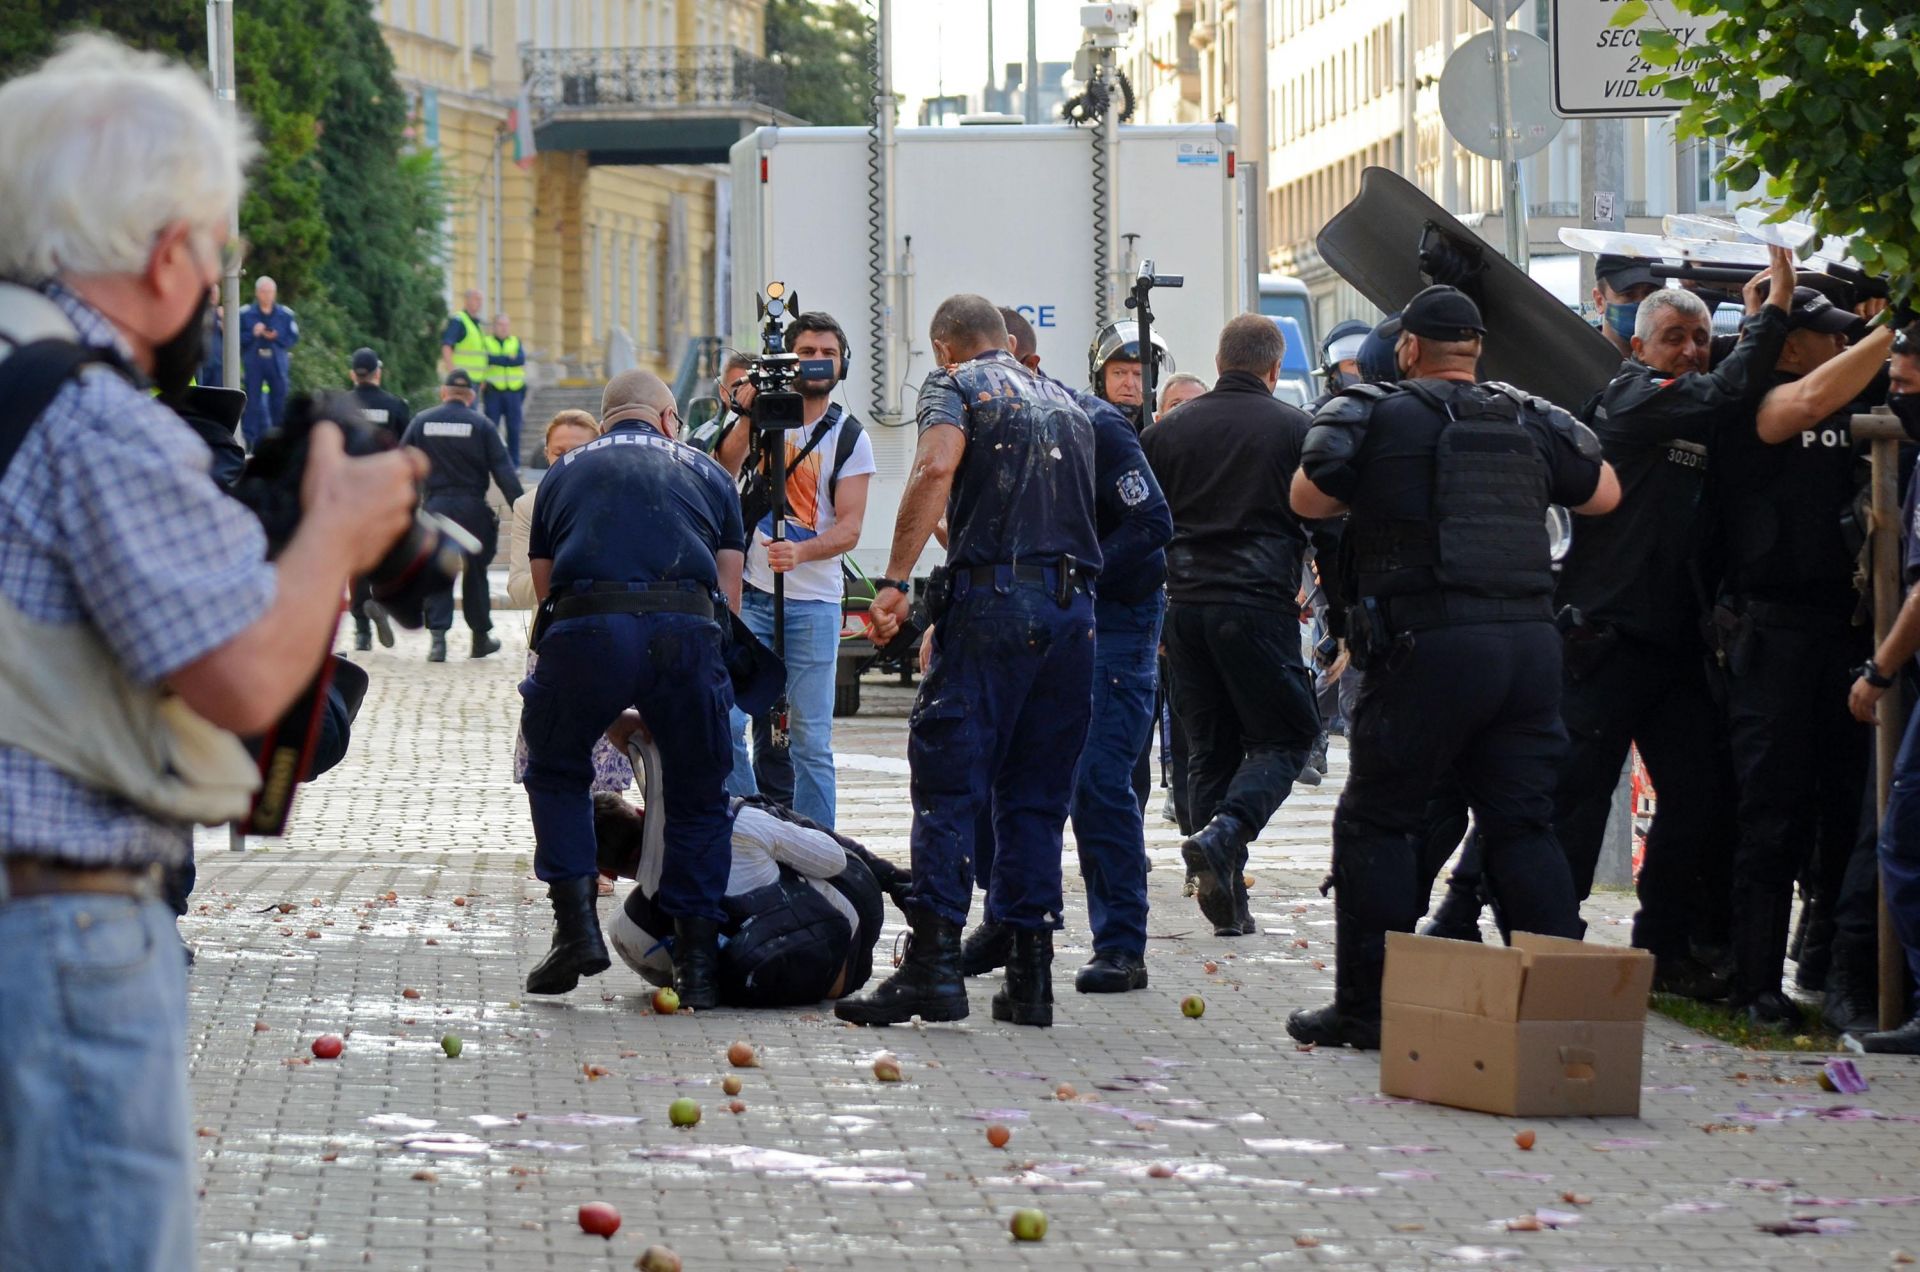 Към 11 ч трети опит за пробив от страна на протестиращите, десетки бяха изведени и арестувани от полицаите.